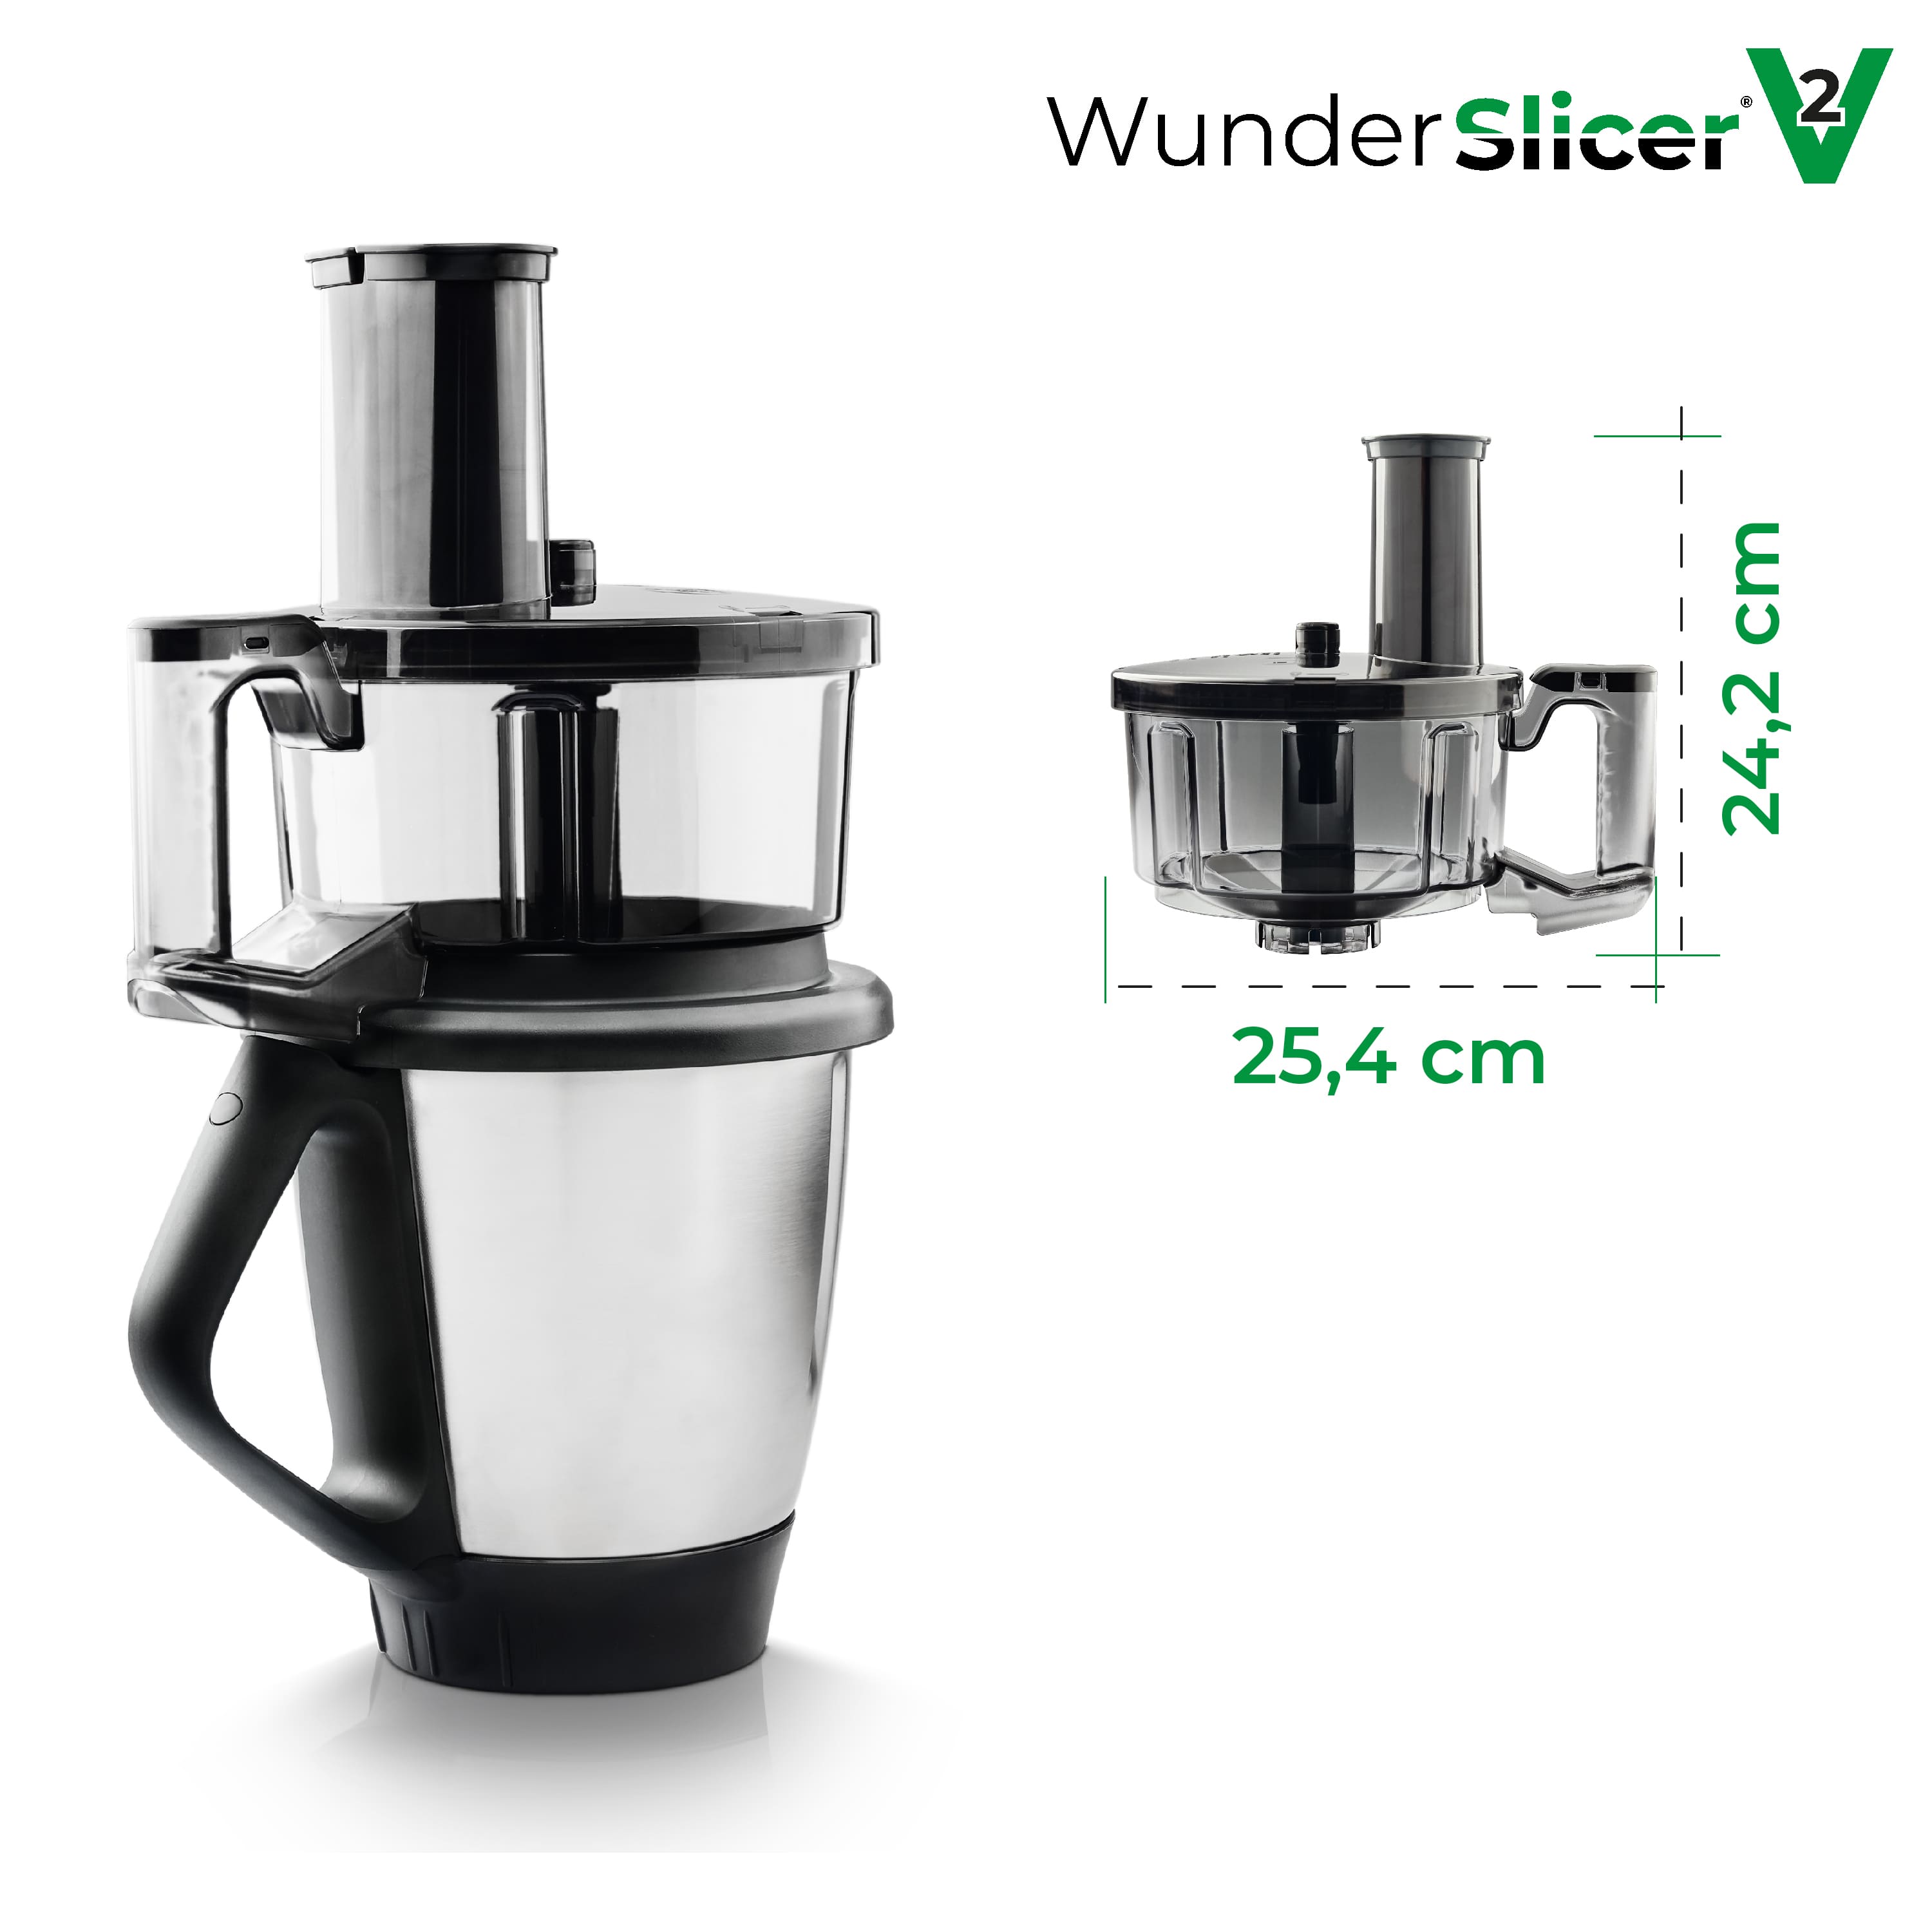 WunderSlicer® V2 | Vegetable cutter for Thermomix TM6, TM5 - PRE-SALE